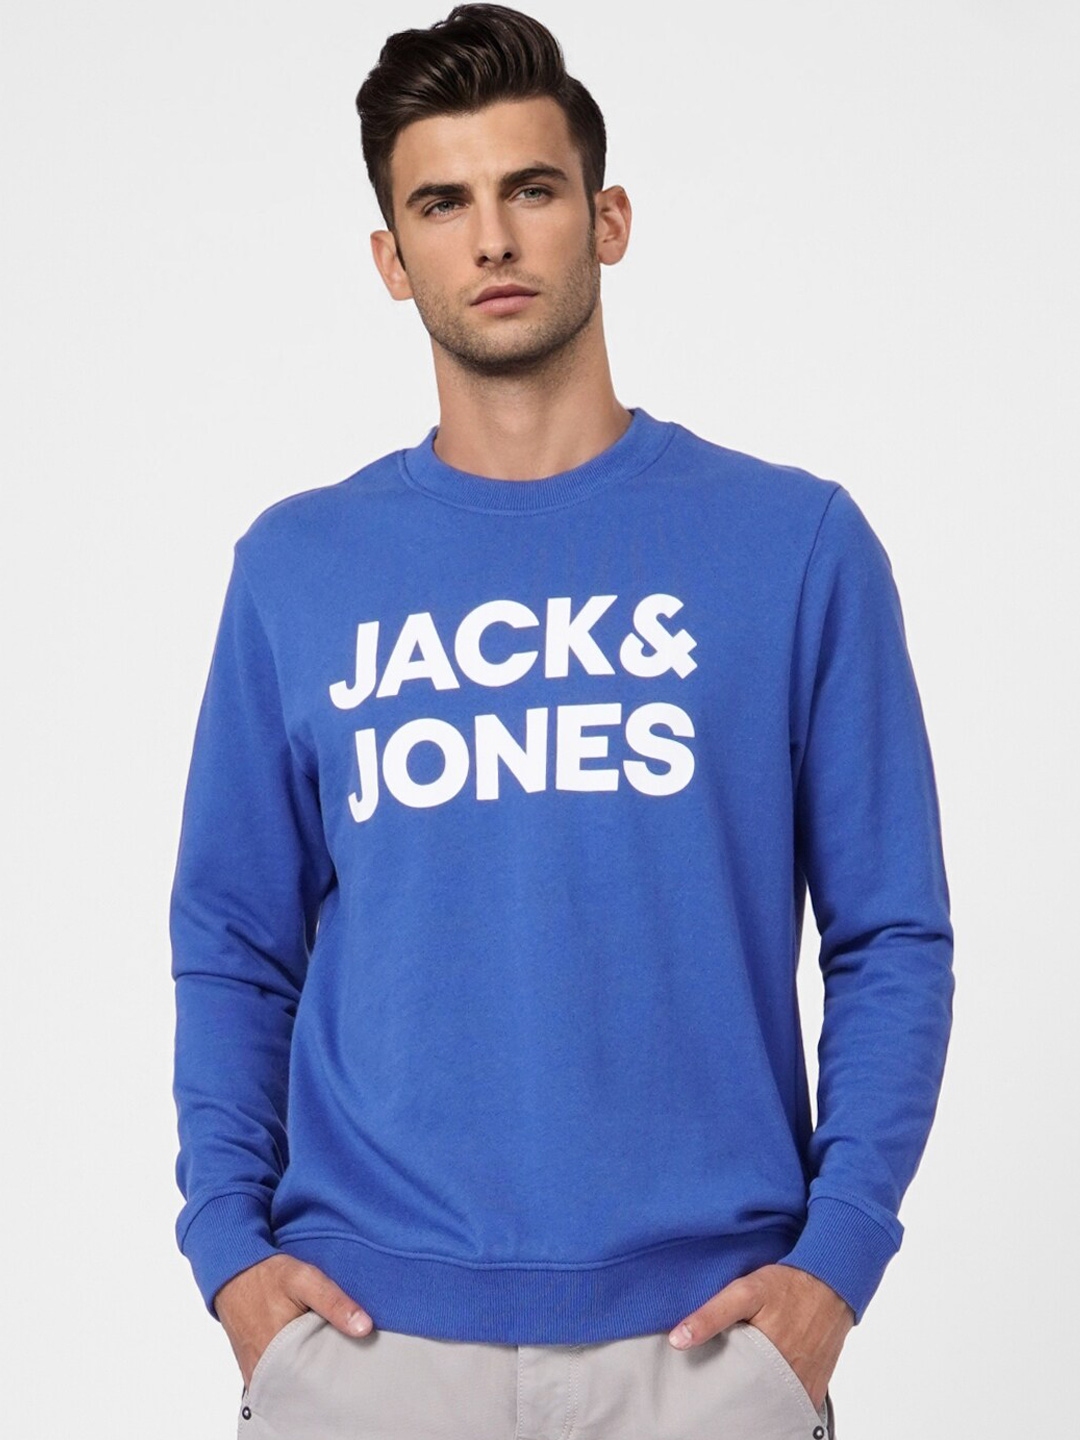 Buy Jack & Jones Men Blue Printed Sweatshirt - Sweatshirts for Men ...